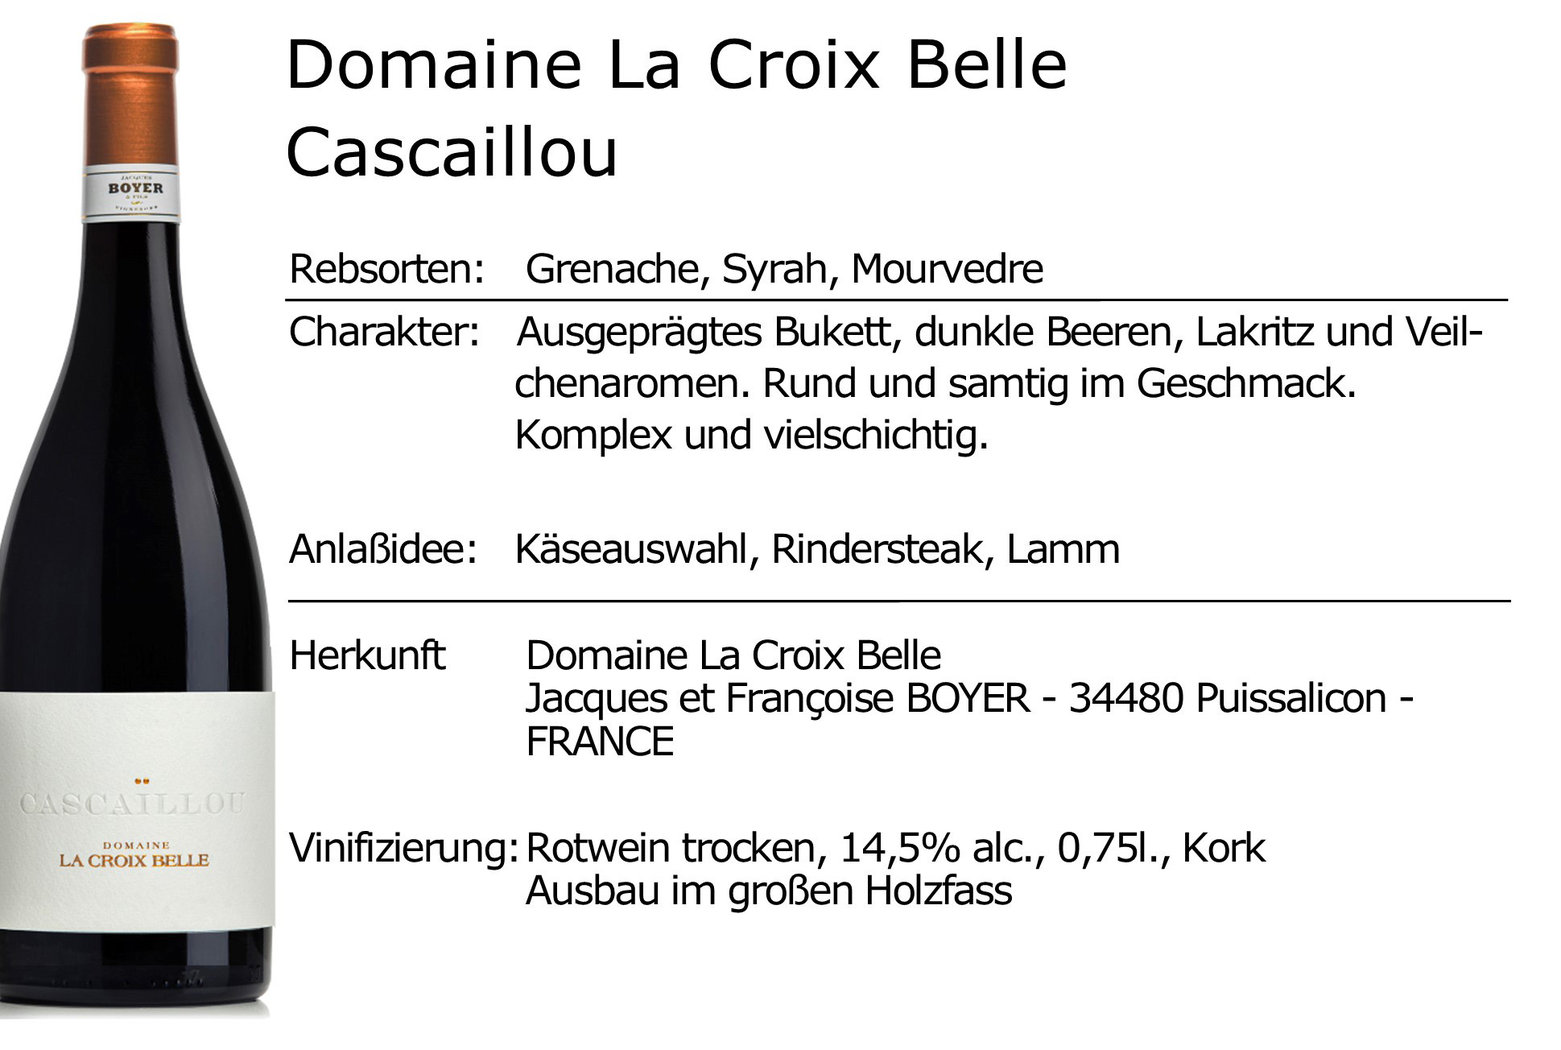 Domaine La Croix Belle Cascaillou 2017